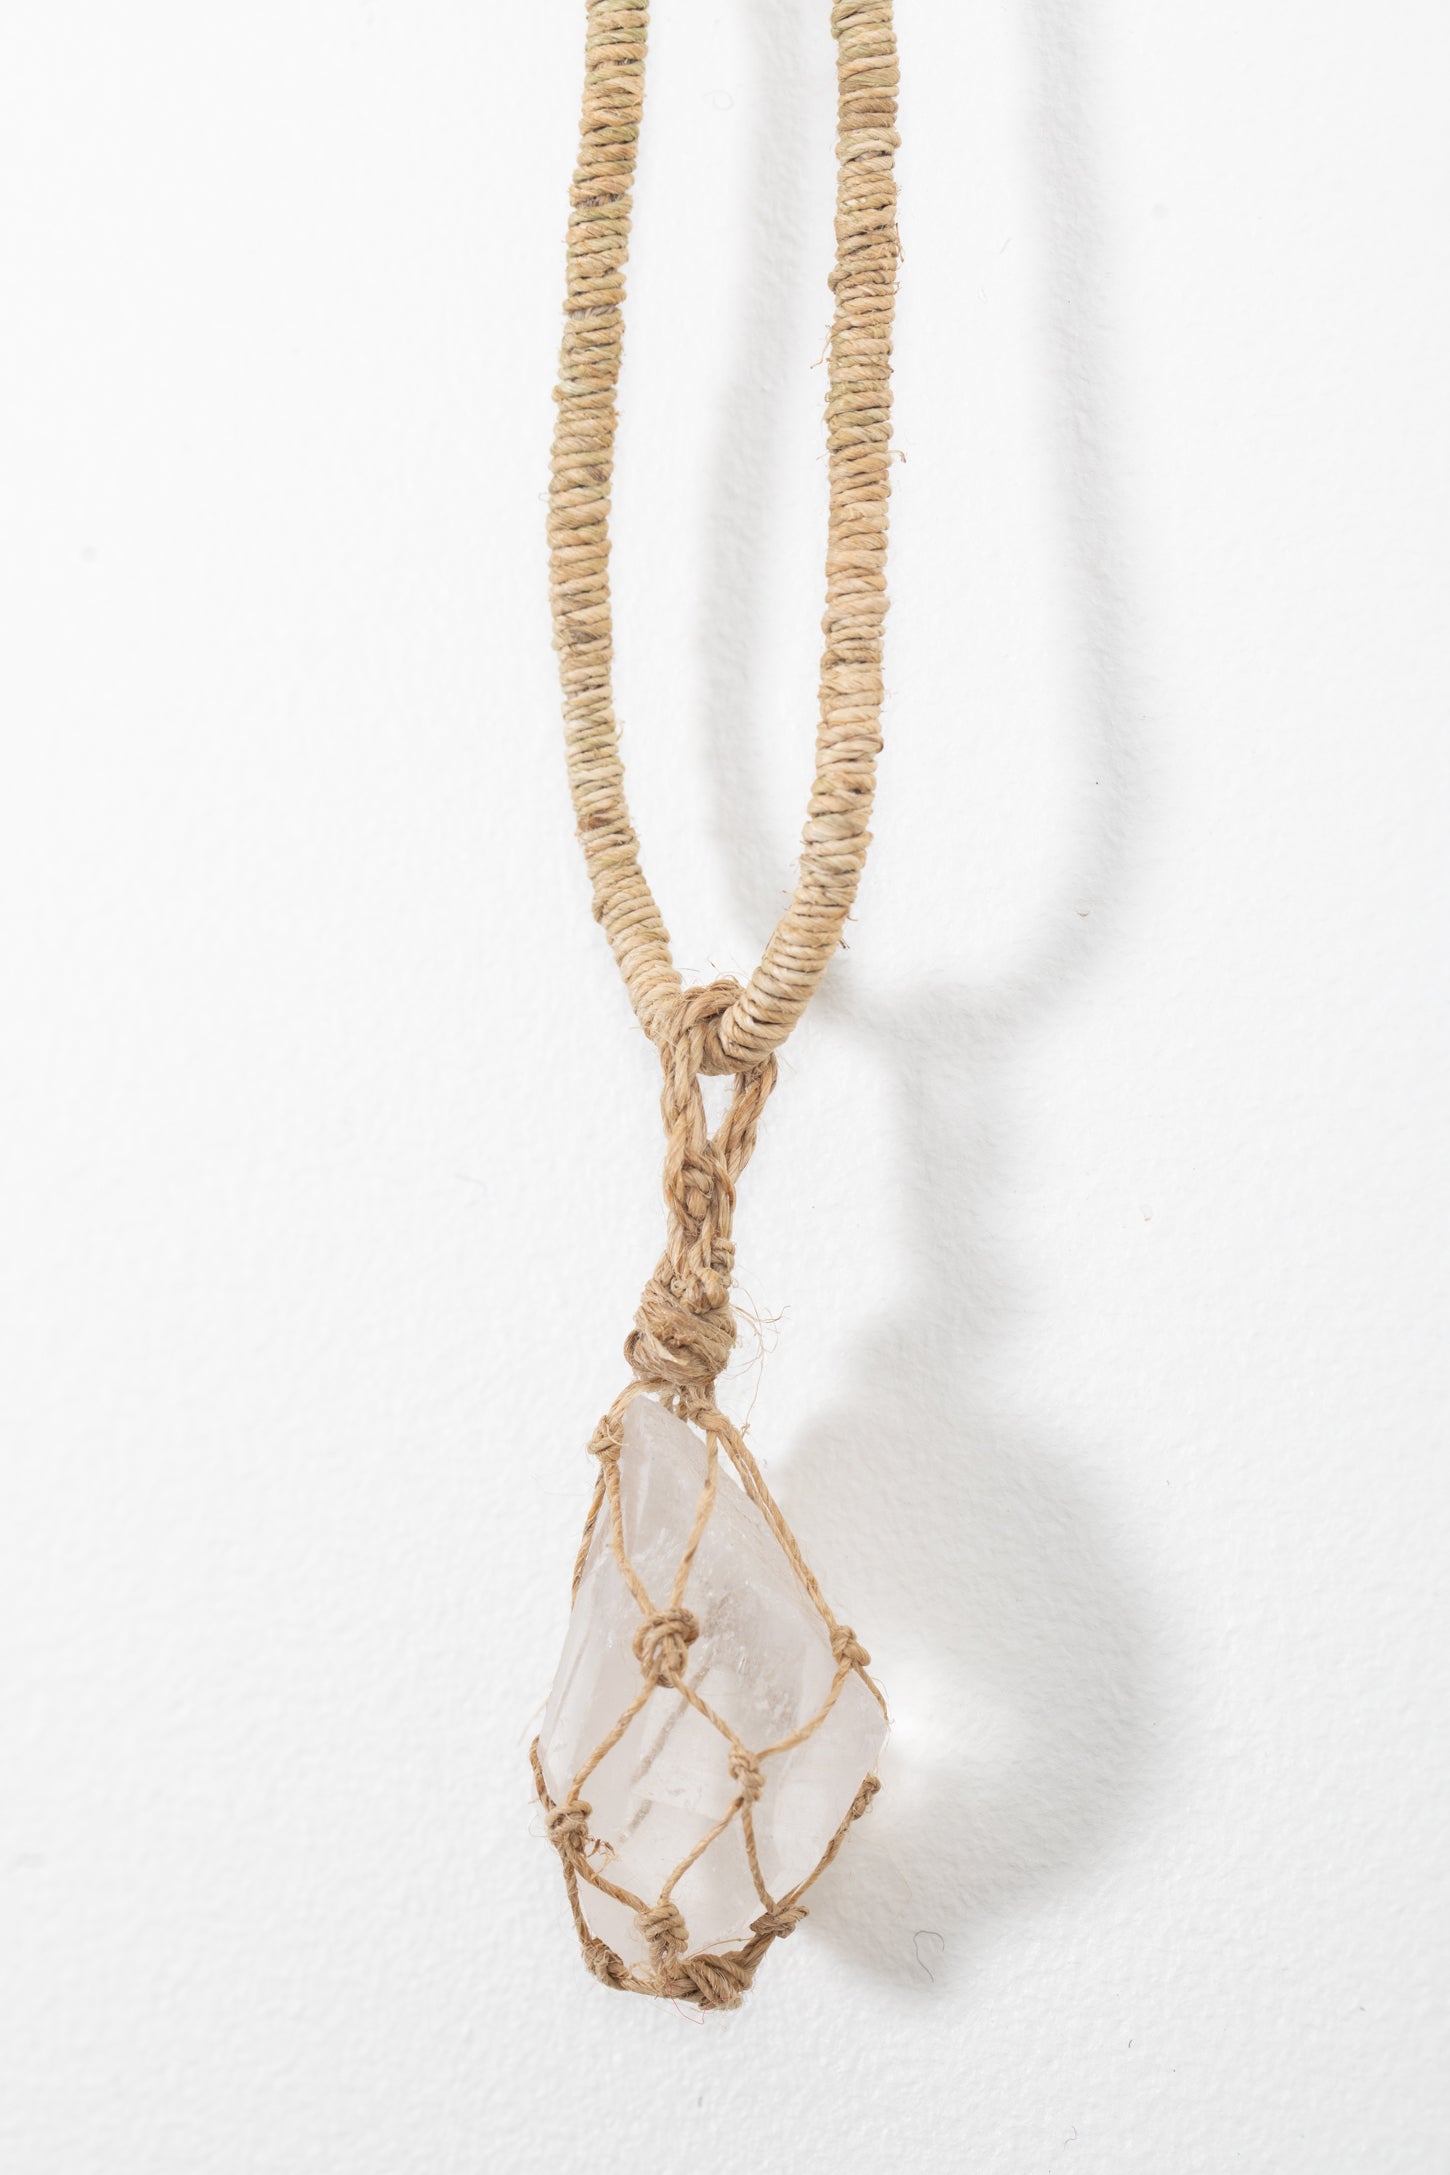 Quartz Crystal Hemp Necklace